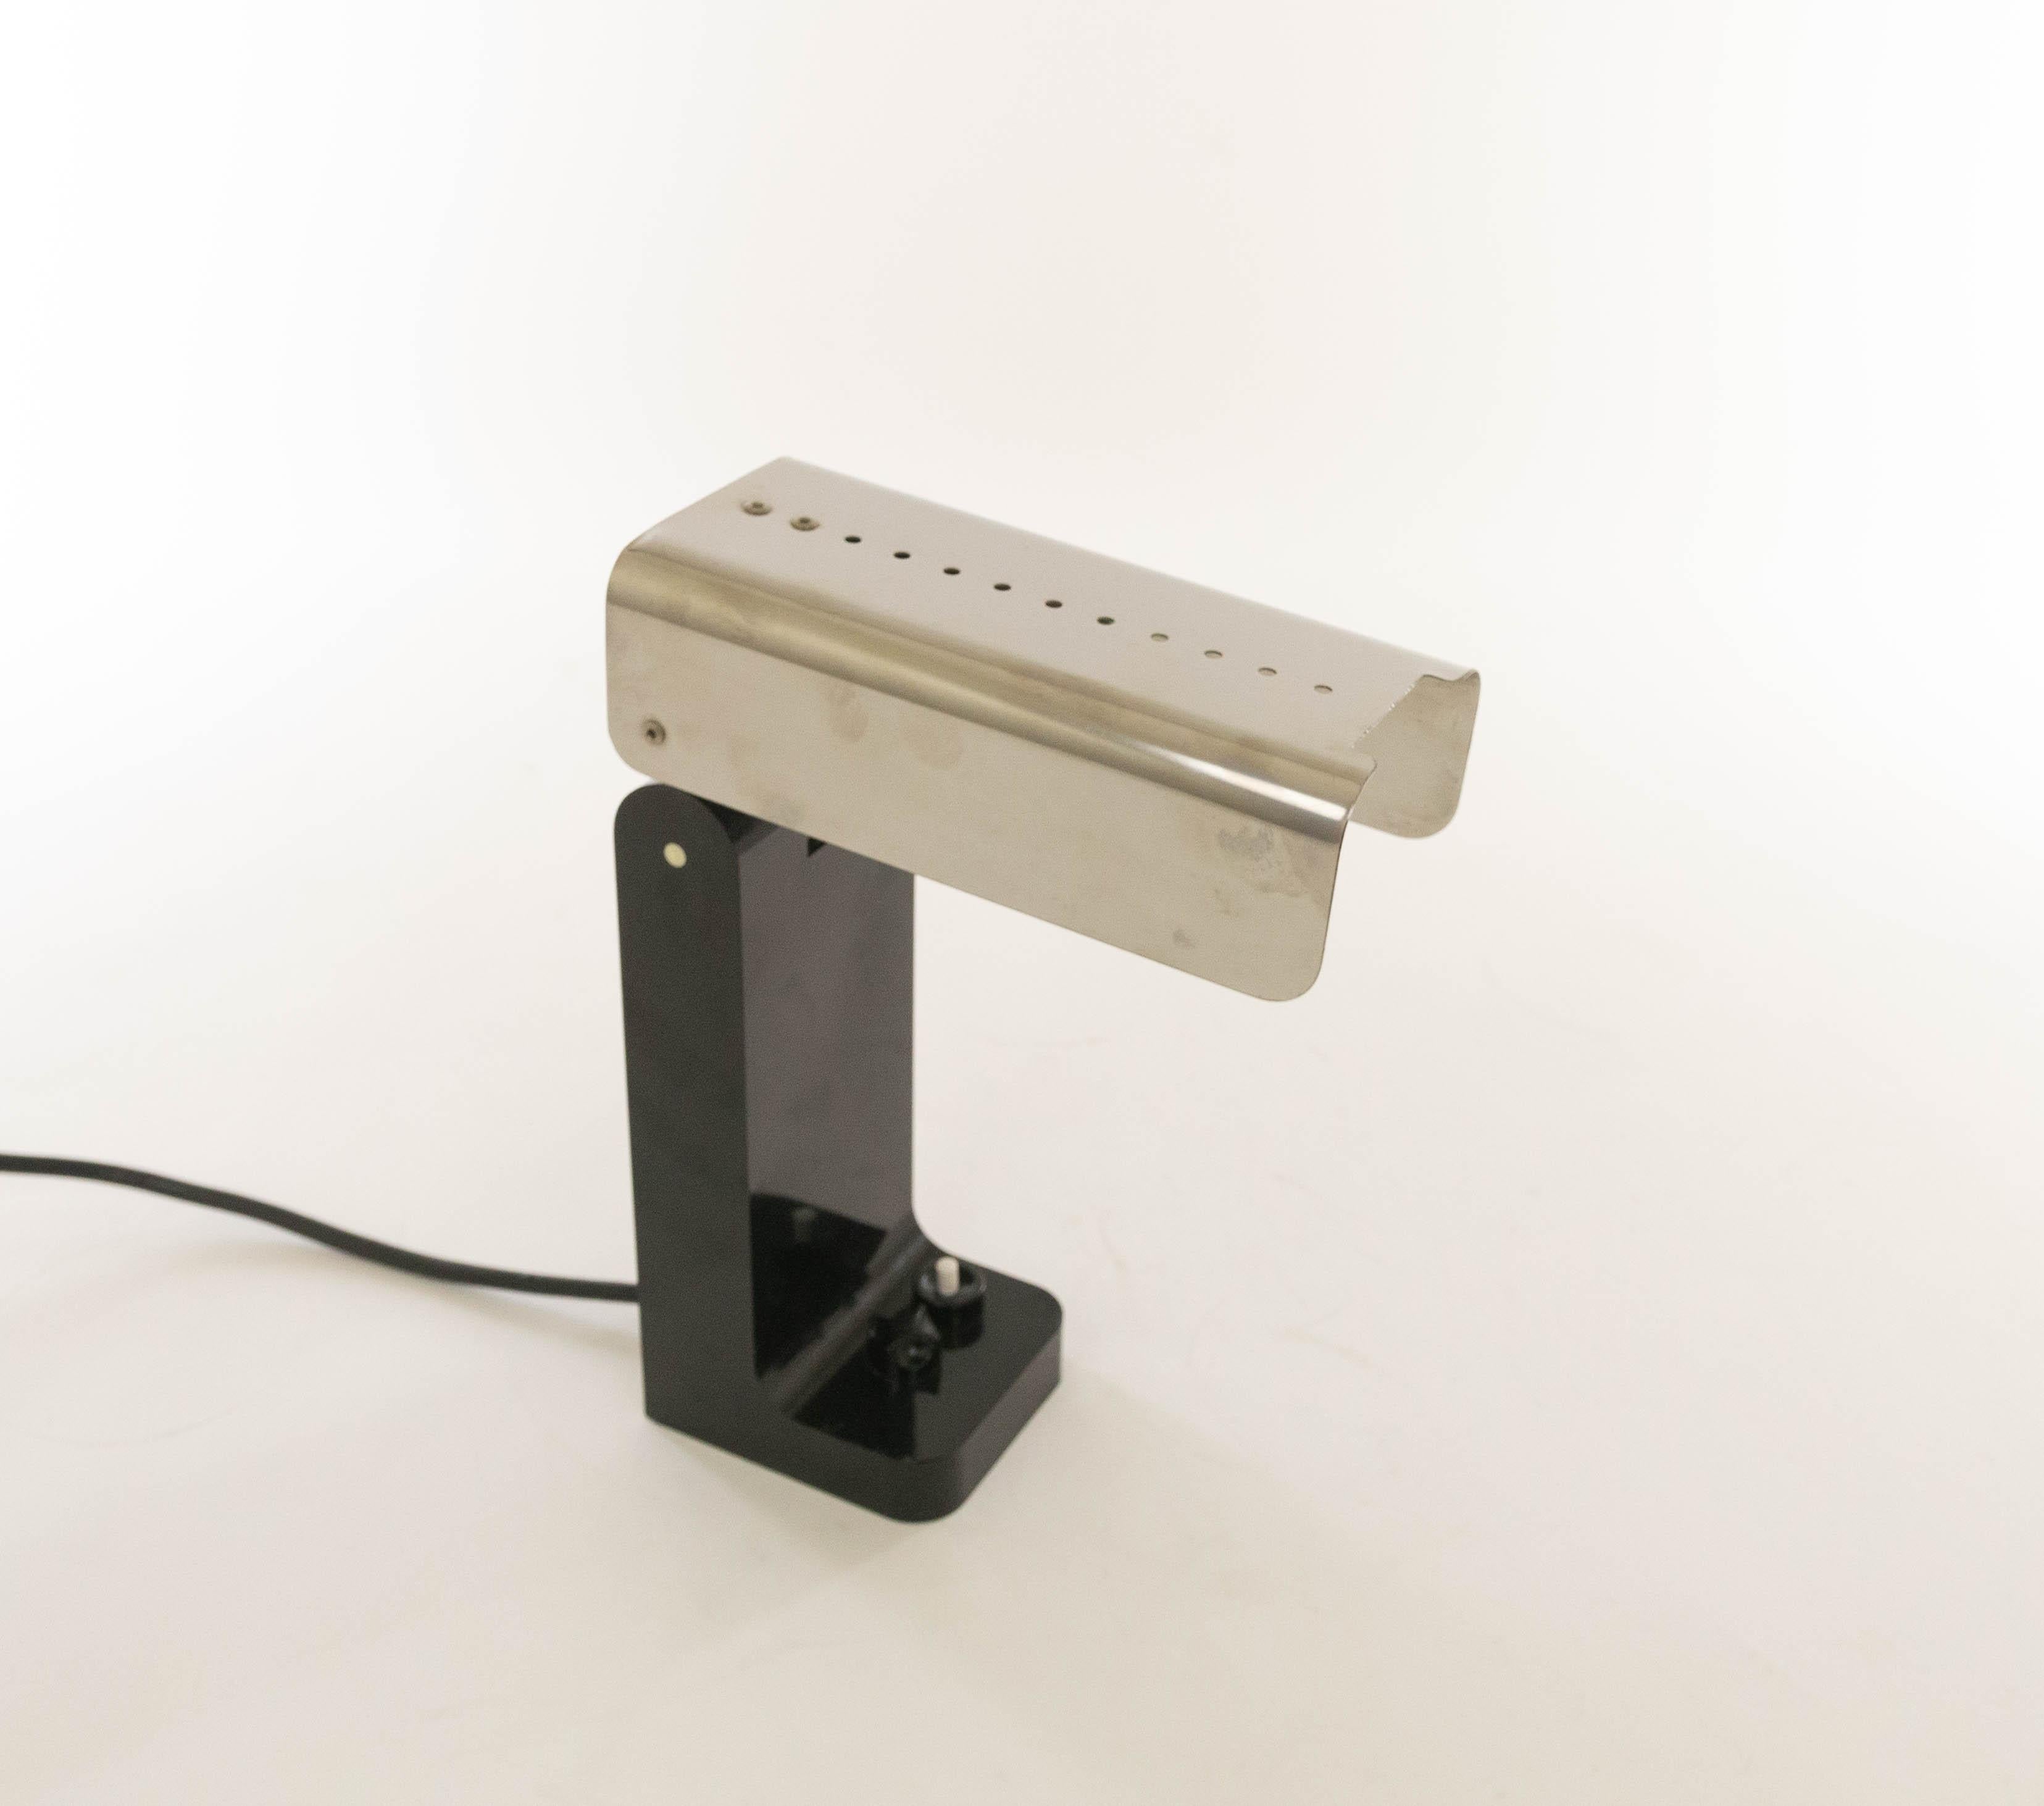 Lampe de table Black Vademecum (modèle 4034), conçue par Joe Colombo en 1968 et fabriquée par Kartell.

La lampe Vademecum est composée d'une base en plastique et d'un bras / abat-jour en acier inoxydable. Cette partie est réglable et peut même être